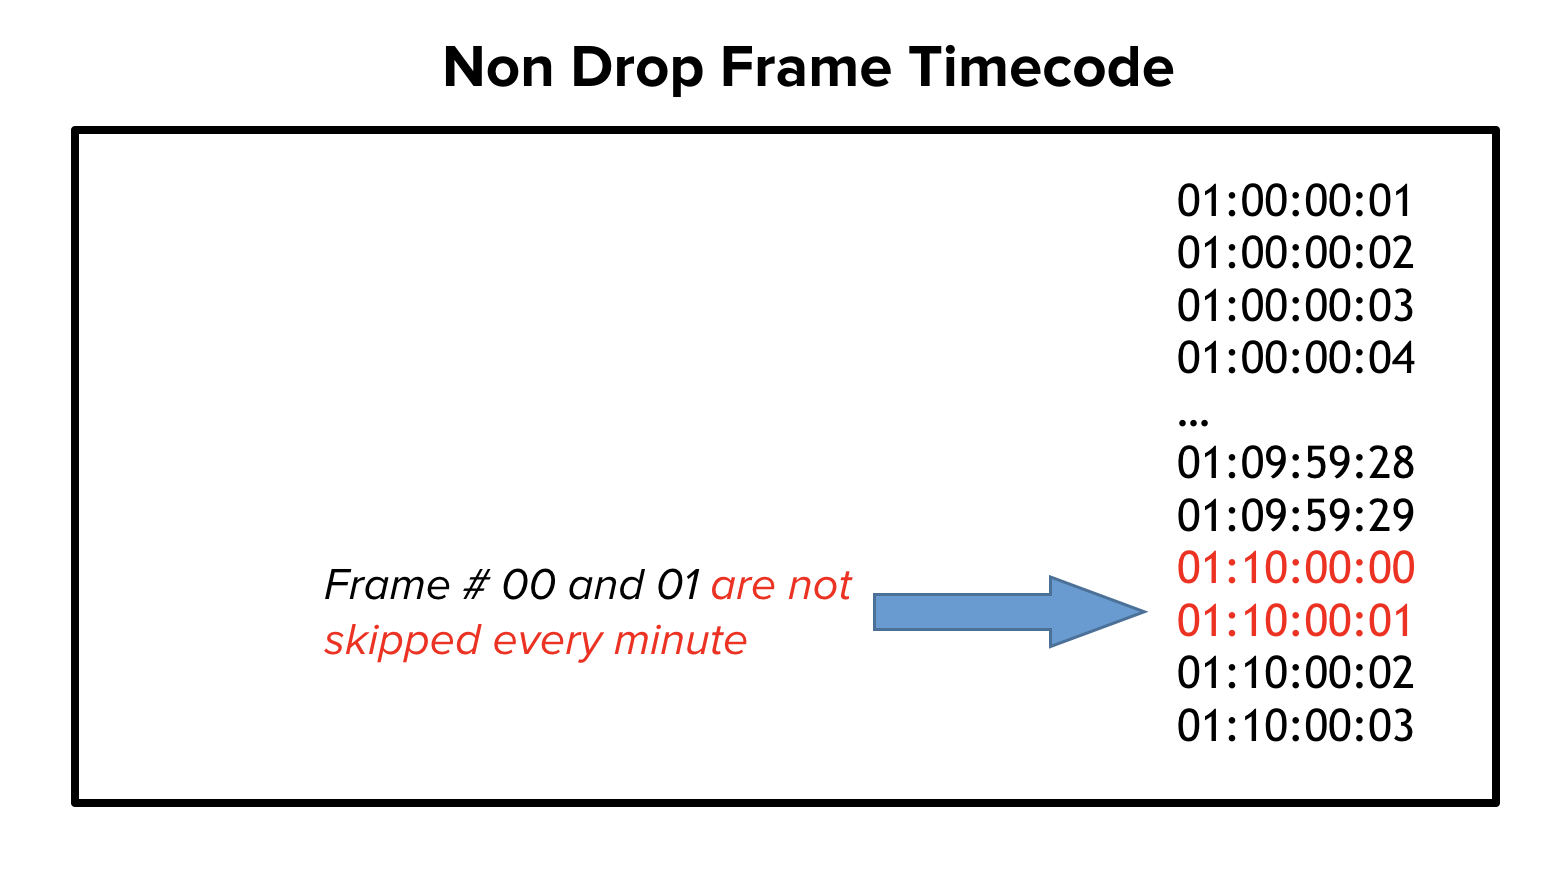 Non drop frame timecode